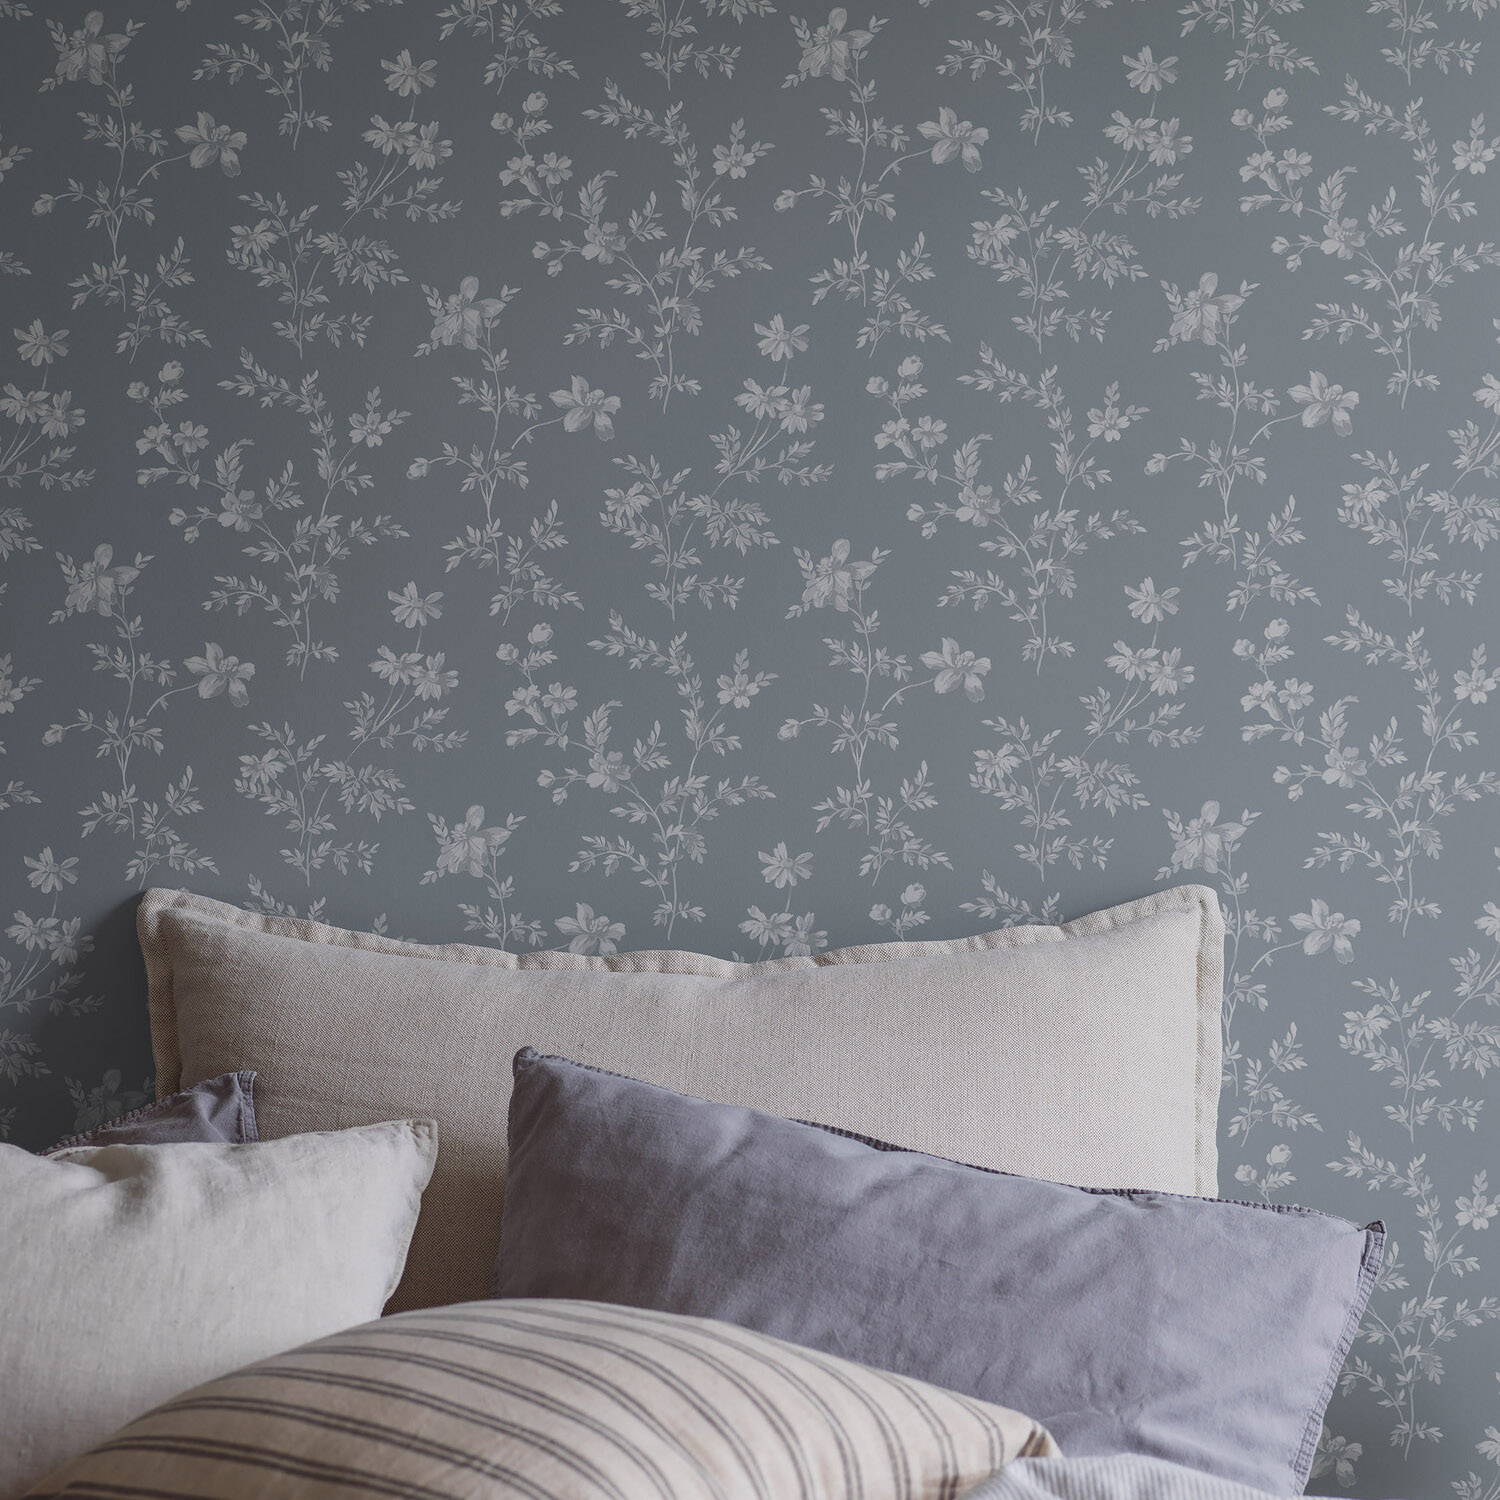 瑞典原装进口Ängsblomma 美式花卉田园温馨恬静卧室背景墙壁纸